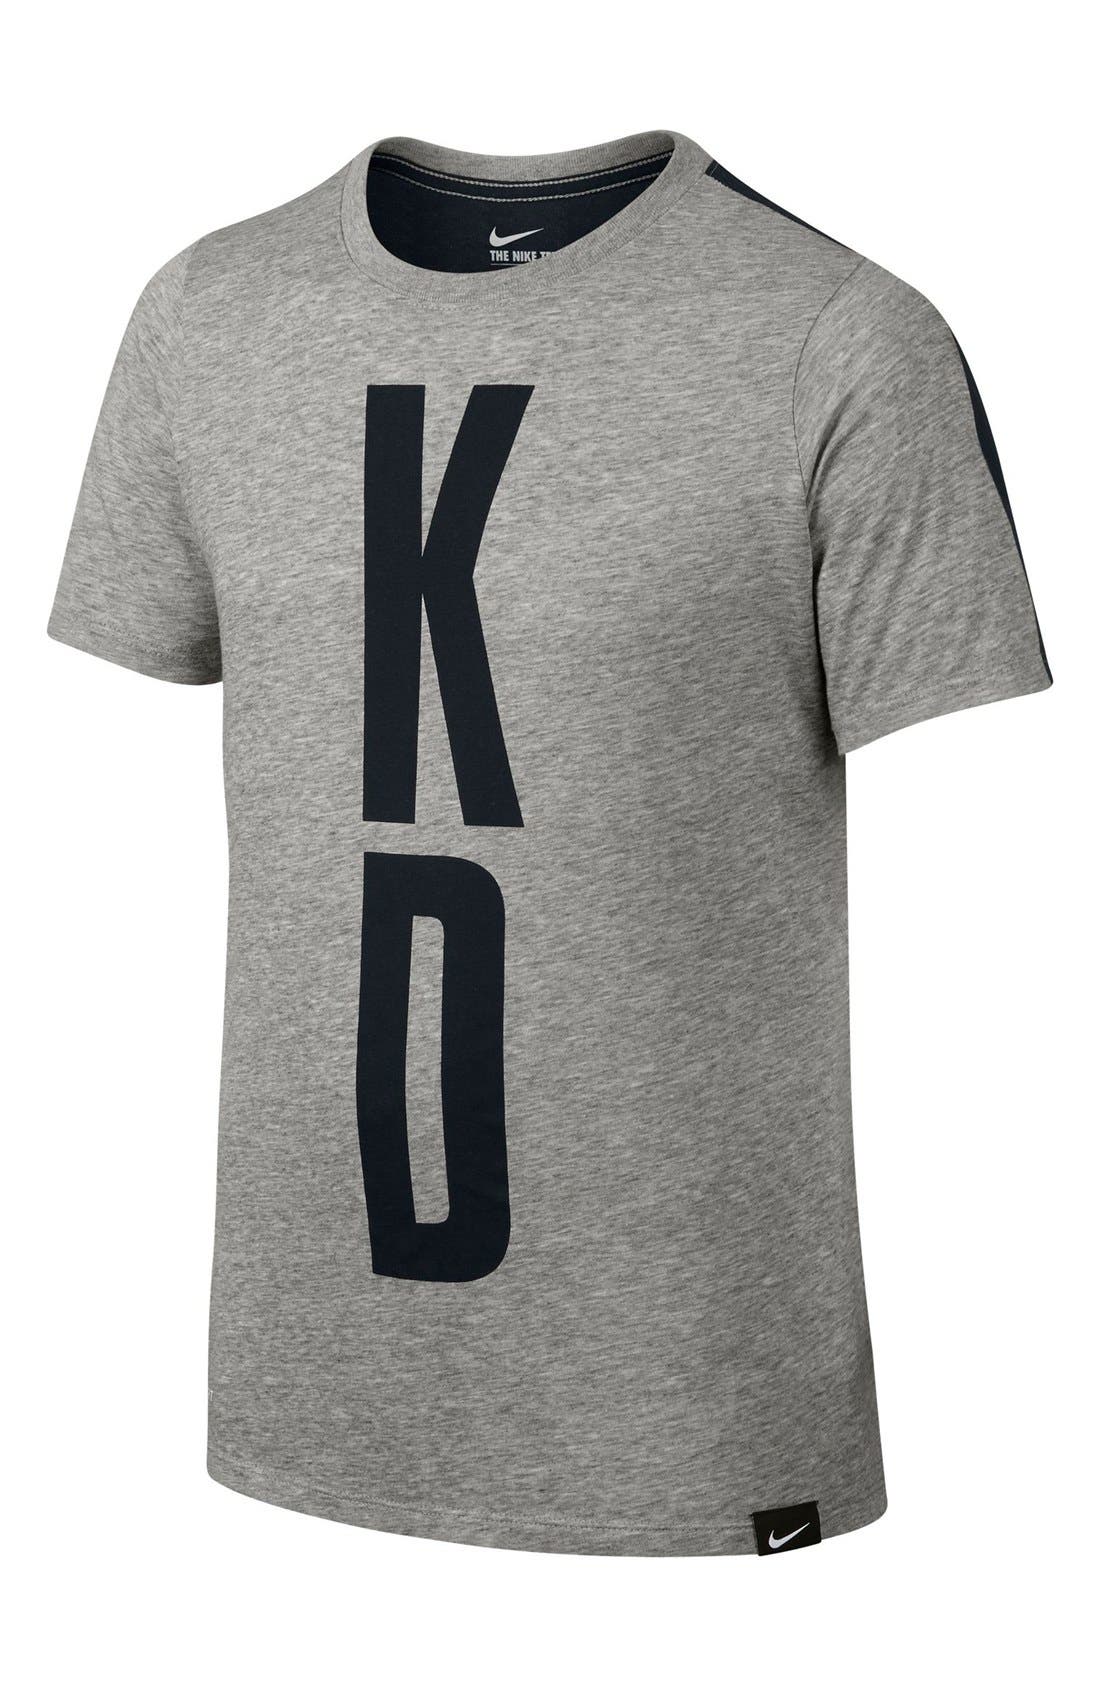 kd35 t shirt